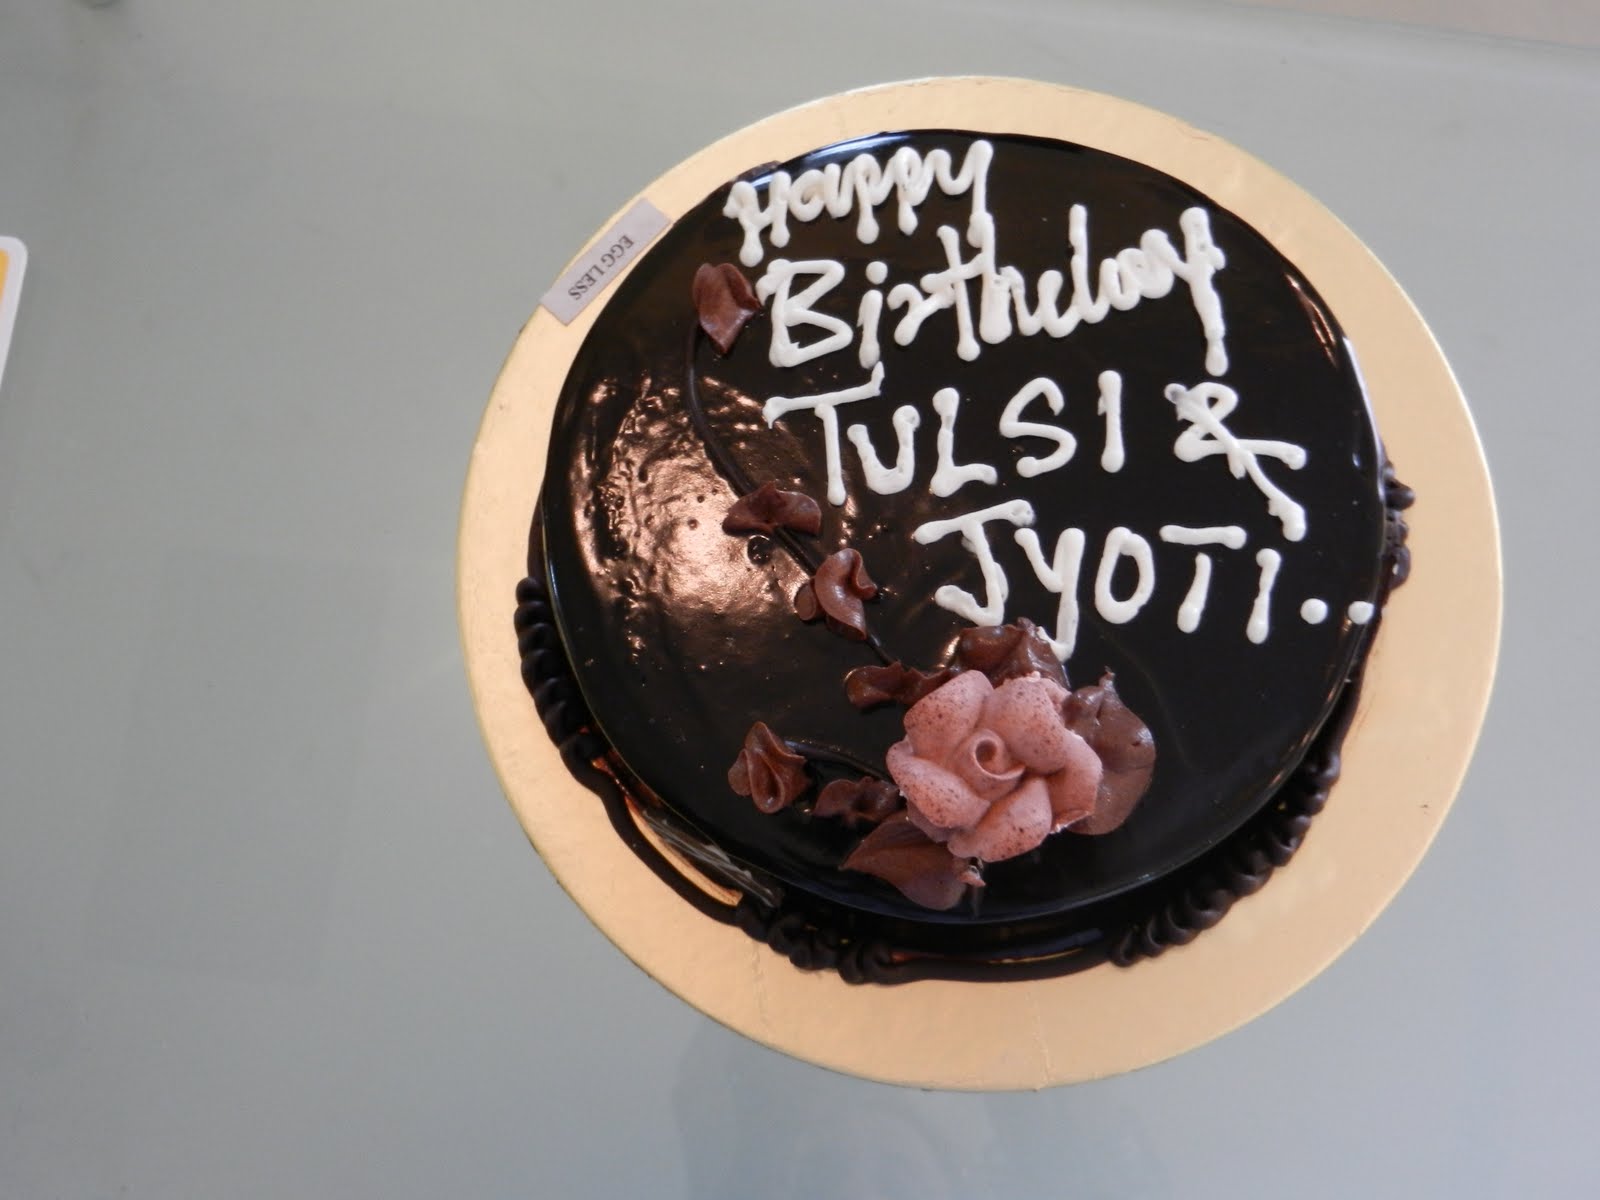 tulsi and jyoti s birthday cake tulsi and jyoti birthday